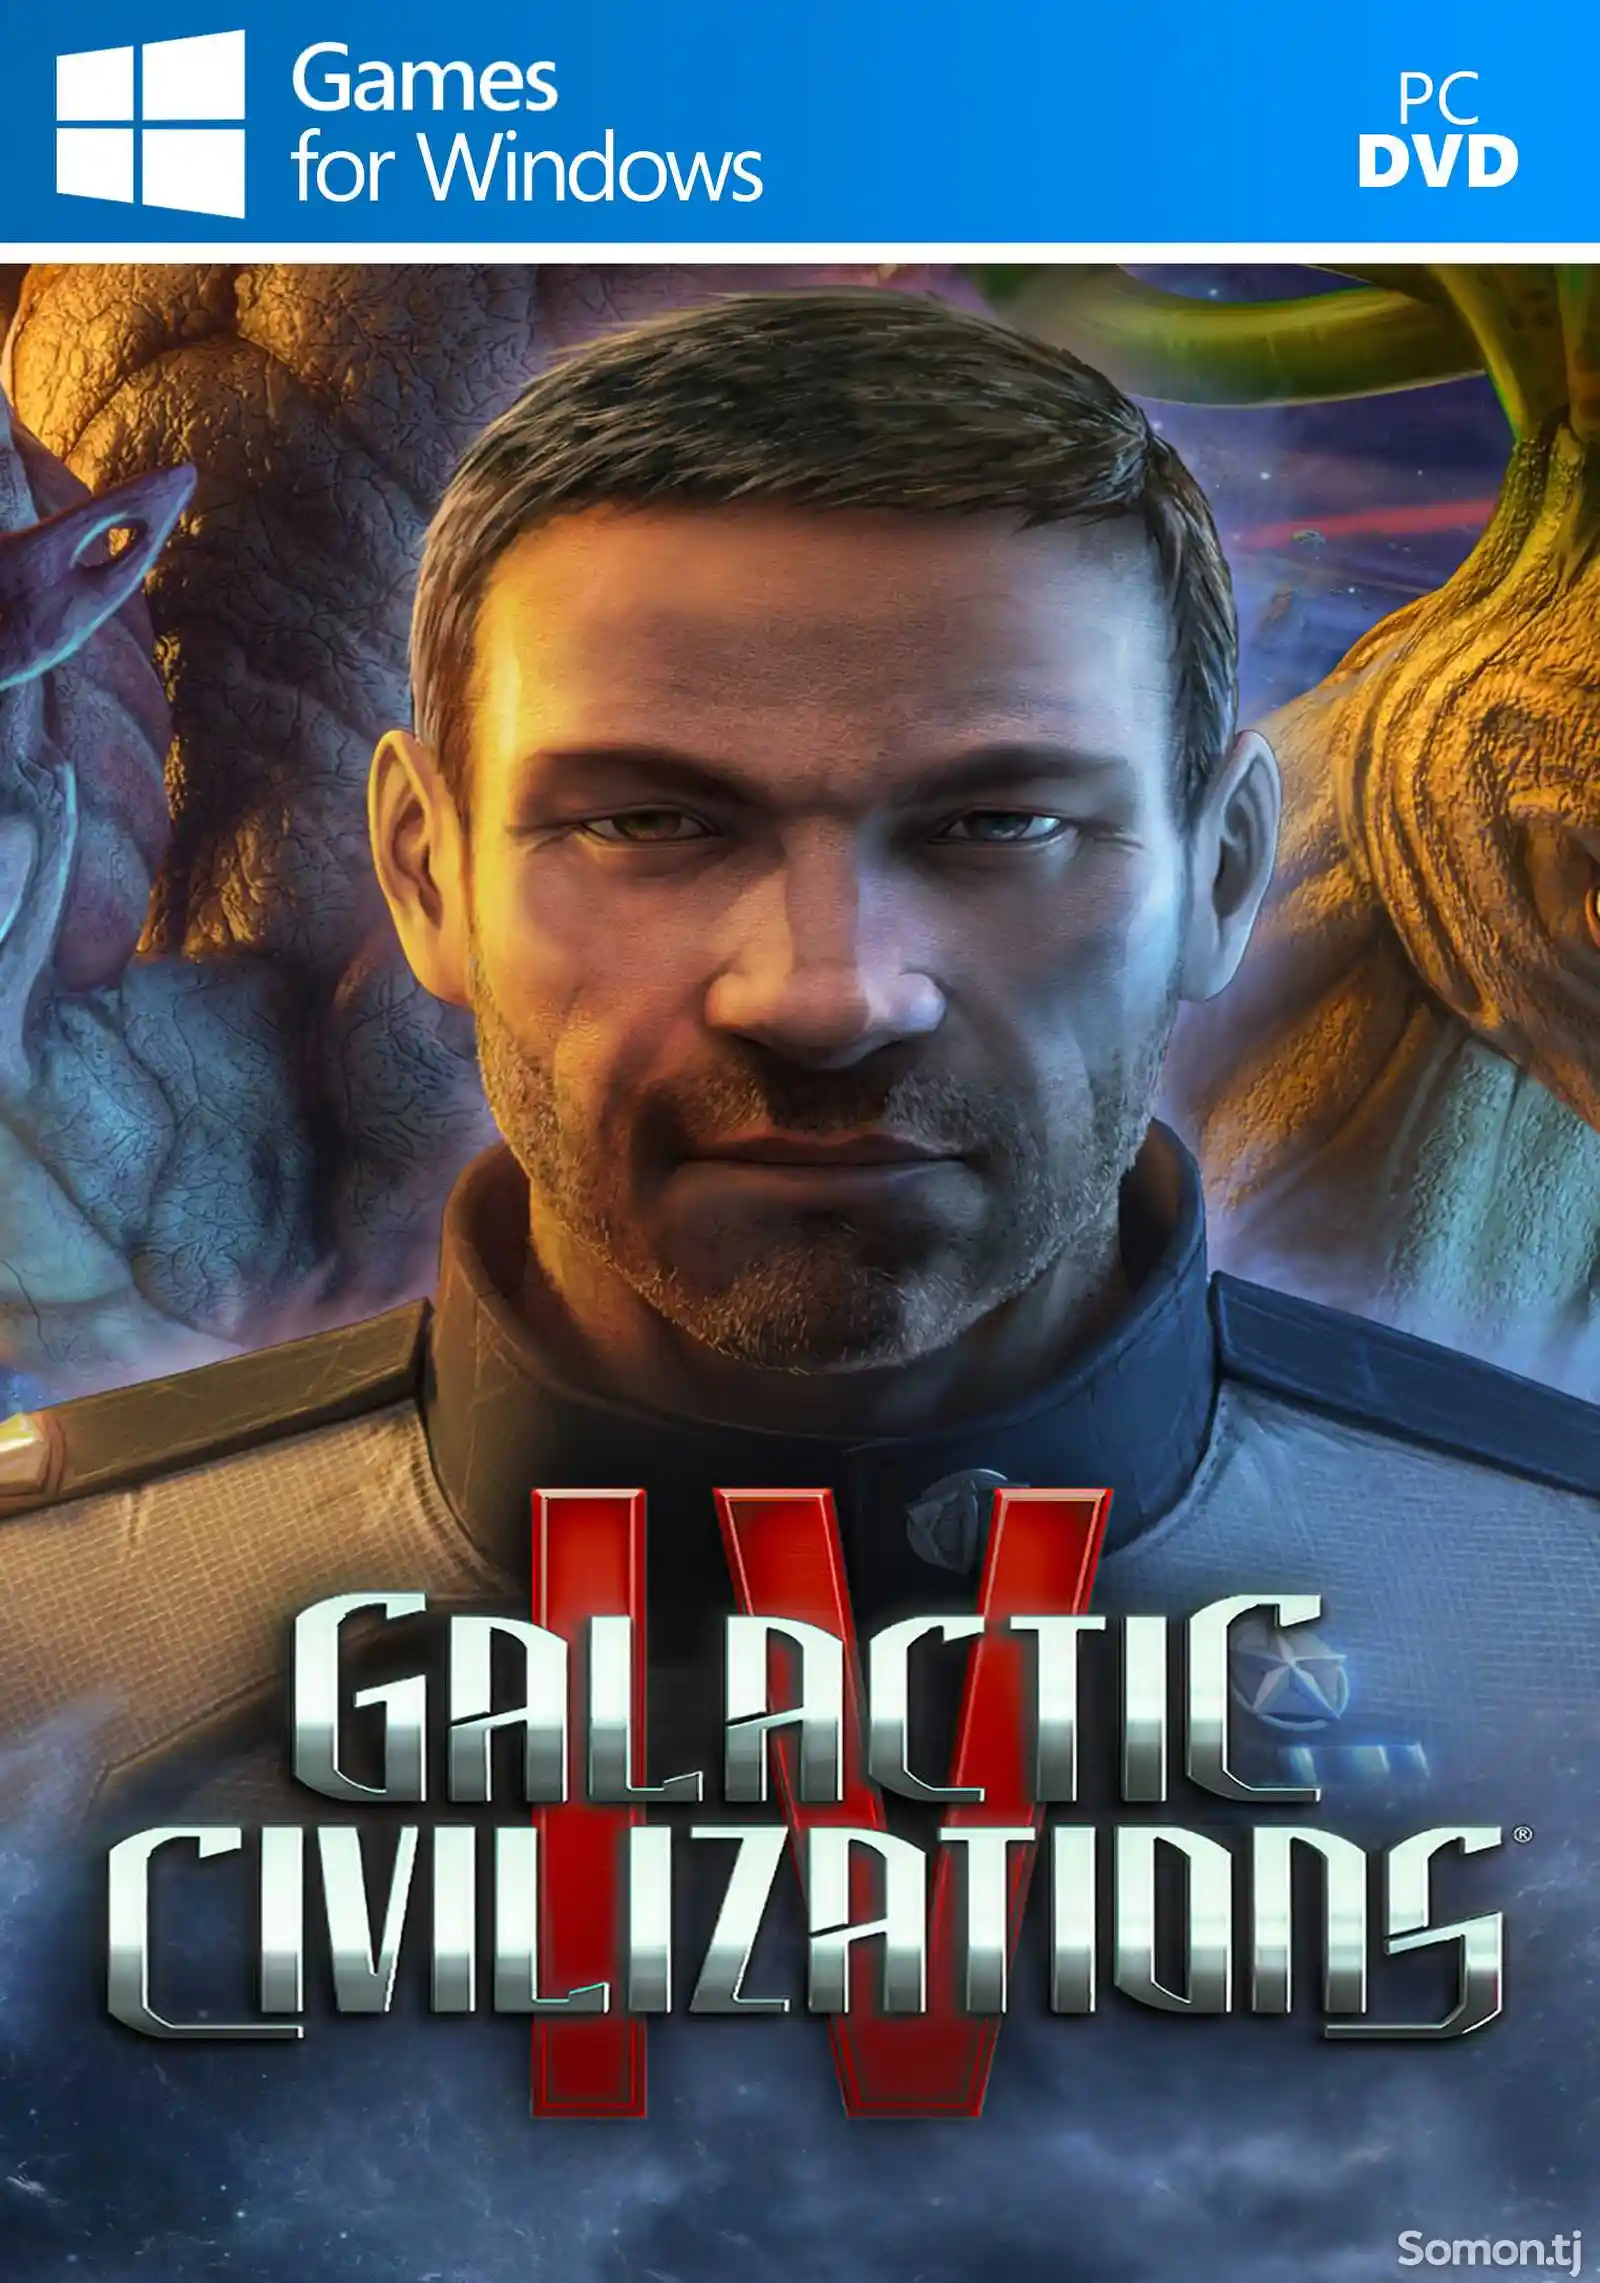 Игра Galactic civilizations IV v2.0 для компьютера-пк-pc-1